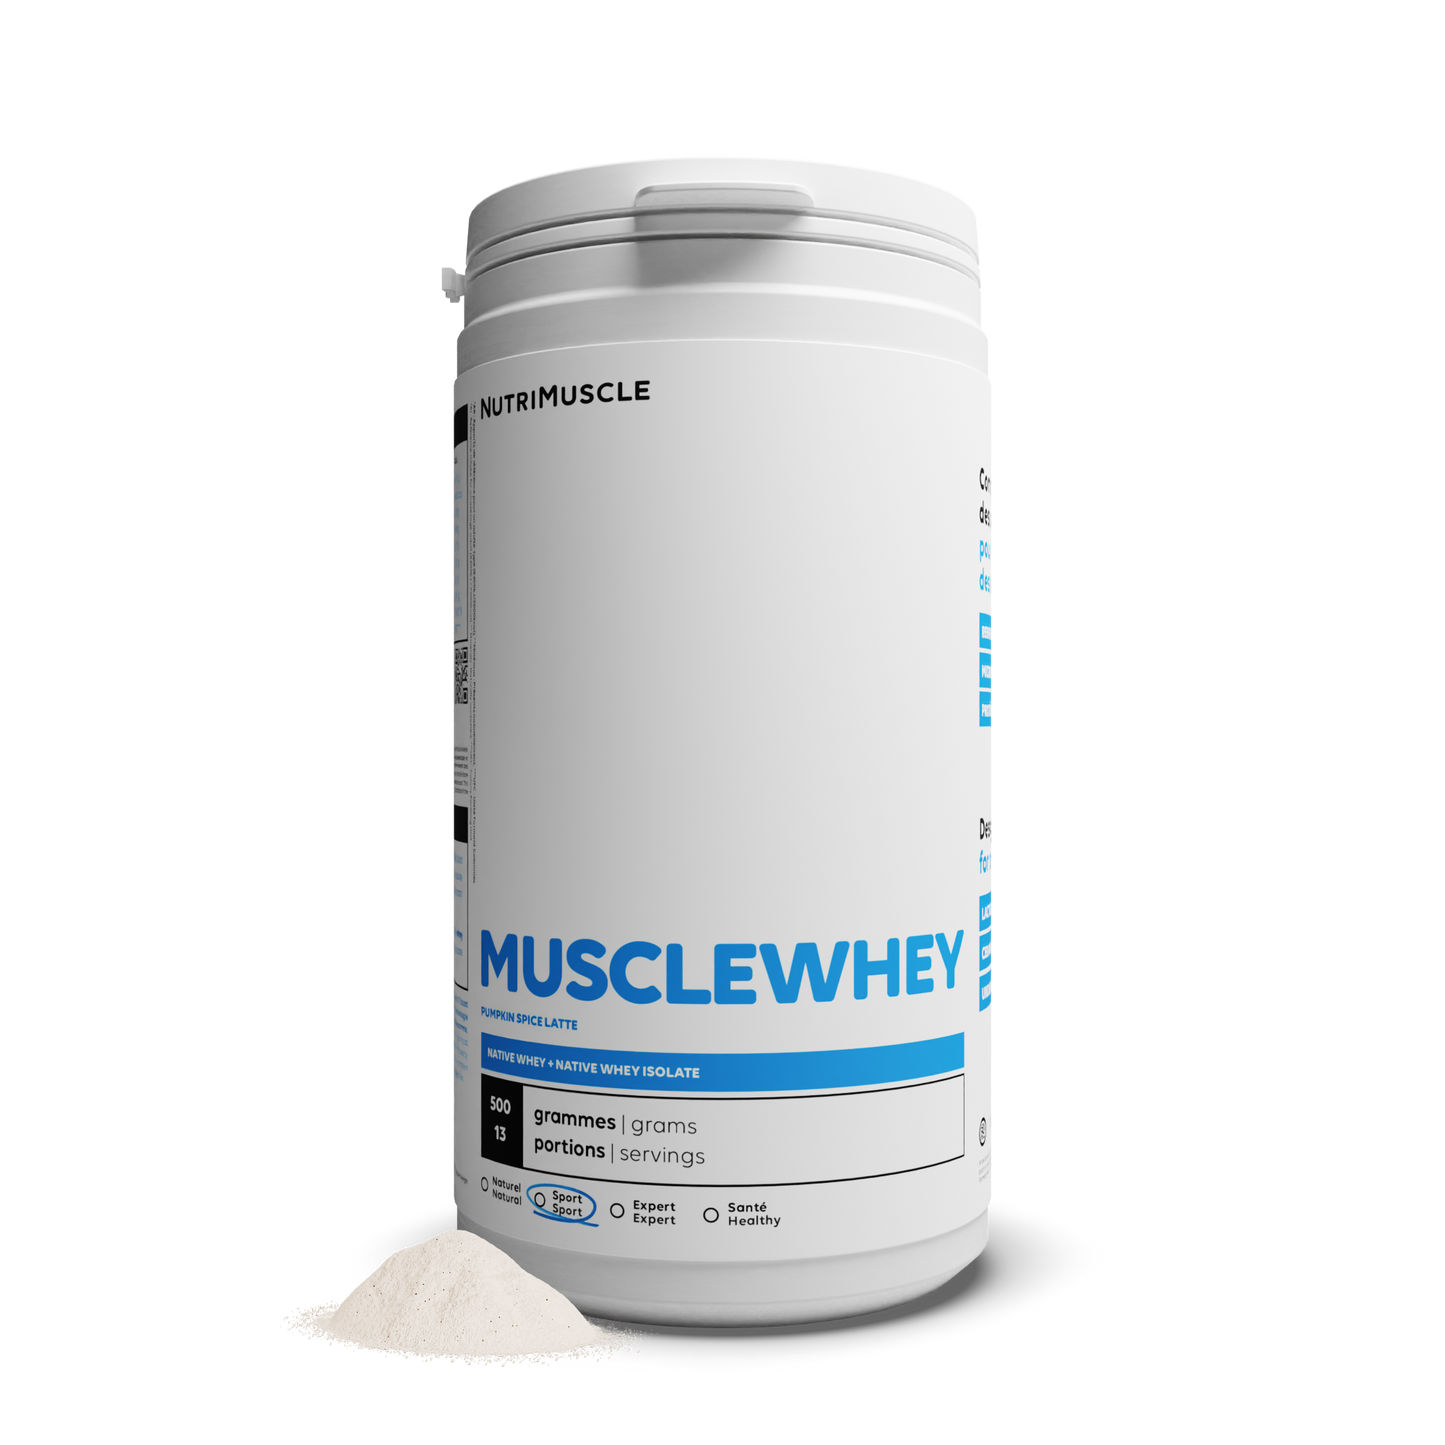 Musclewhey - Protein mischen